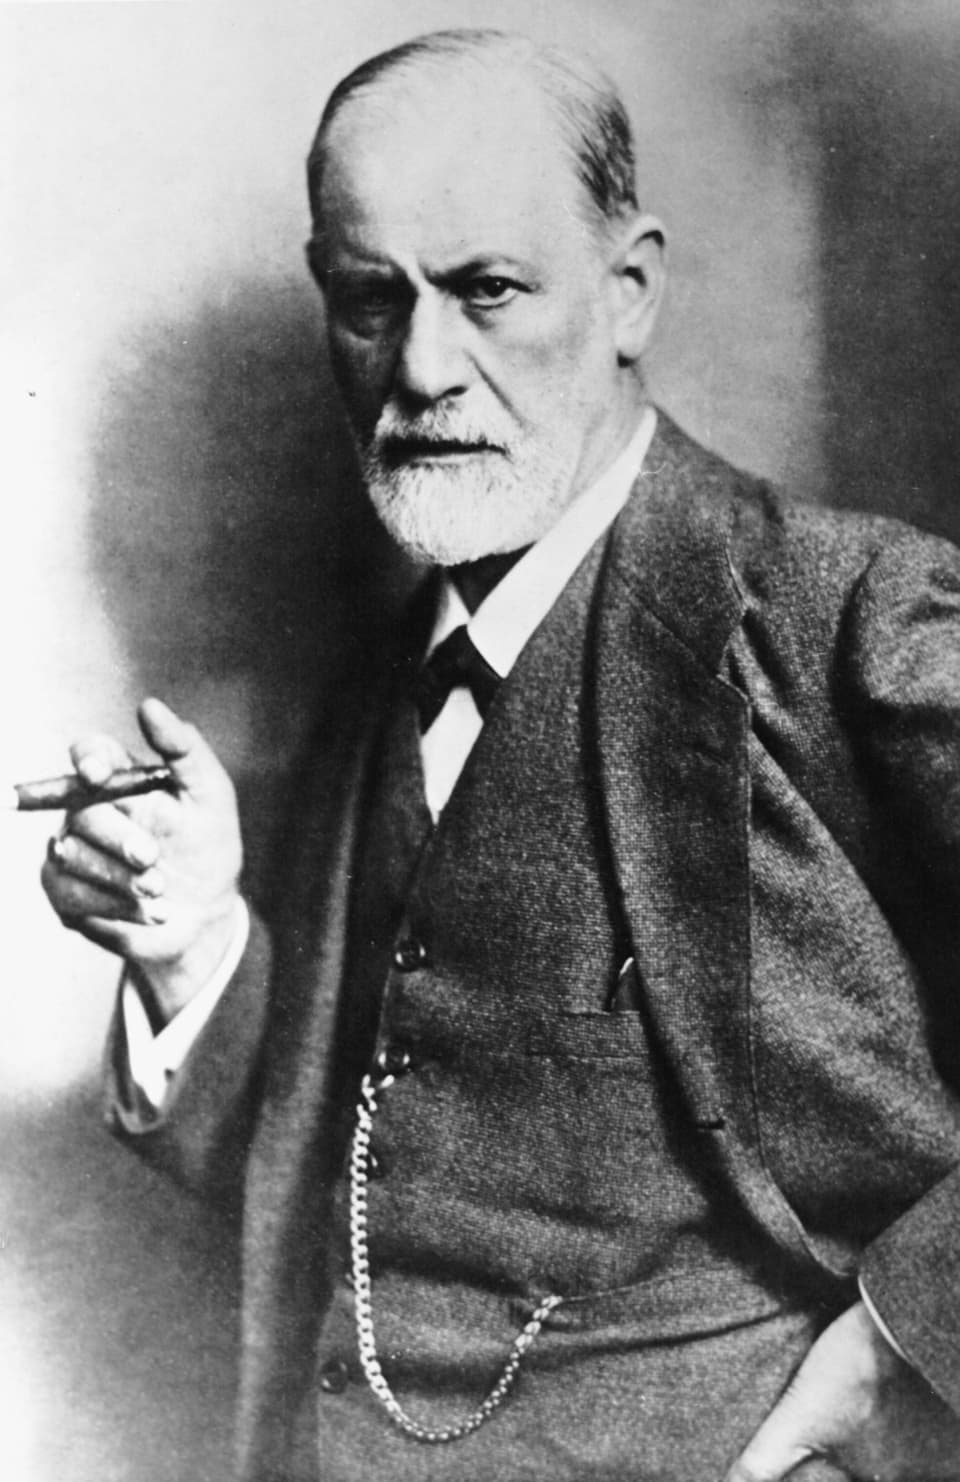 Schwarzweiss-Aufnahme von Sigmund Freud.